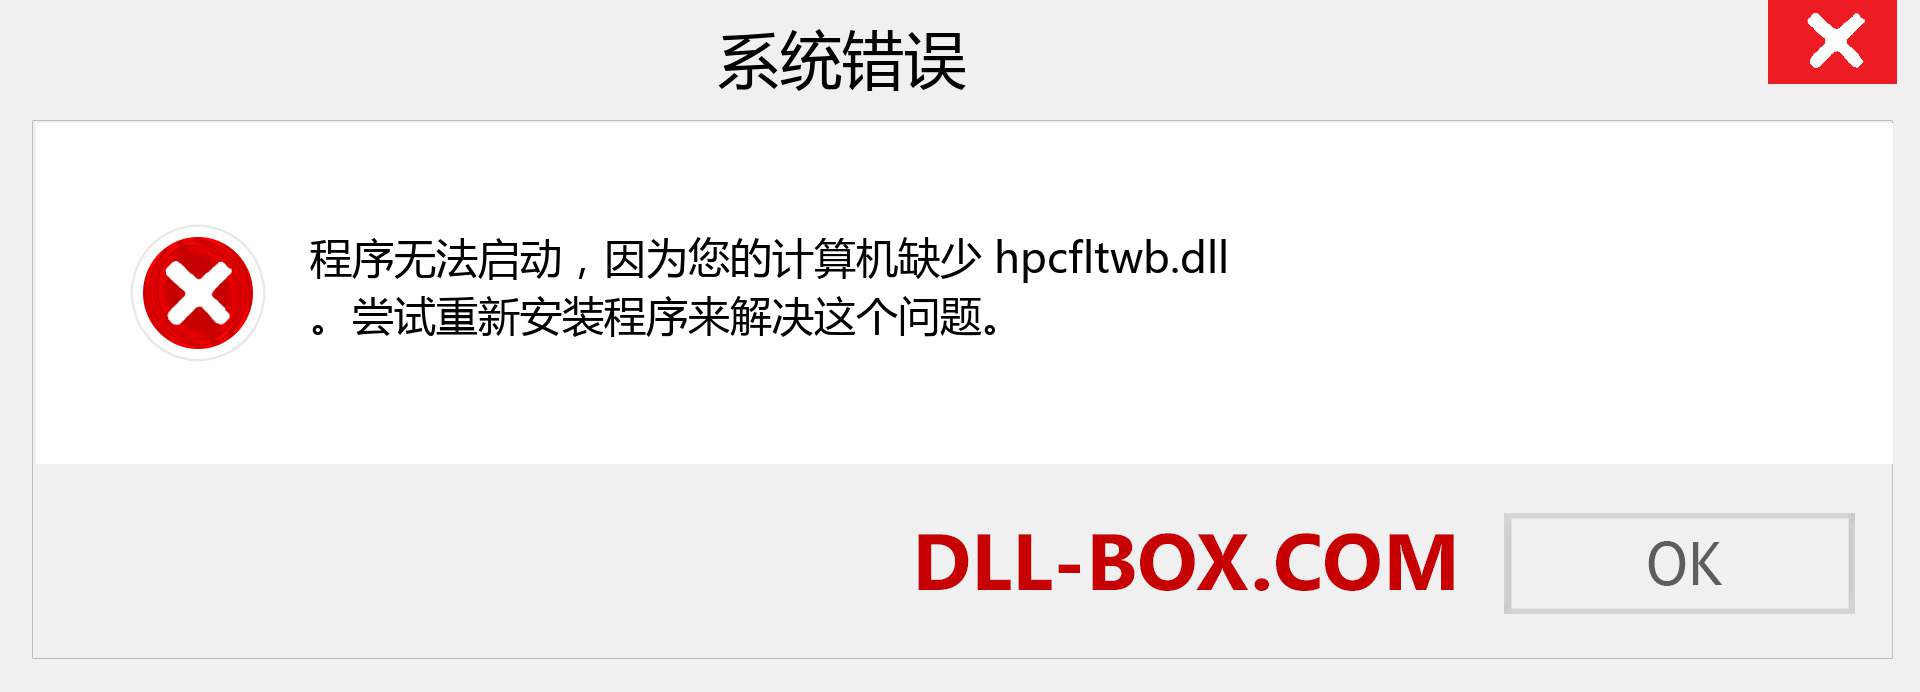 hpcfltwb.dll 文件丢失？。 适用于 Windows 7、8、10 的下载 - 修复 Windows、照片、图像上的 hpcfltwb dll 丢失错误